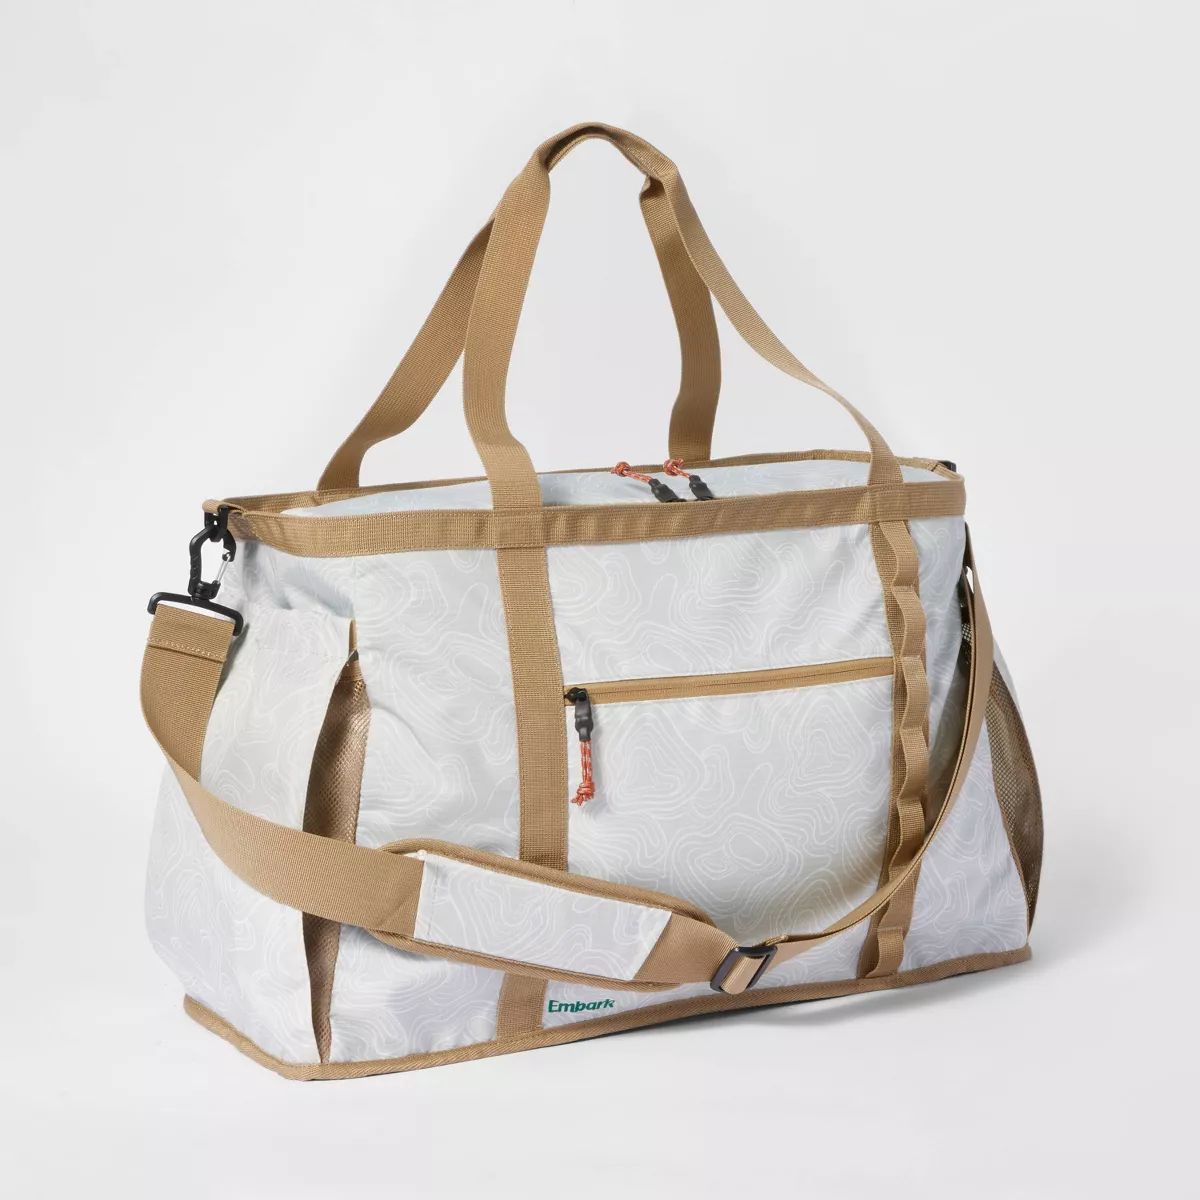 Gear Tote Bag - Embark™ | Target